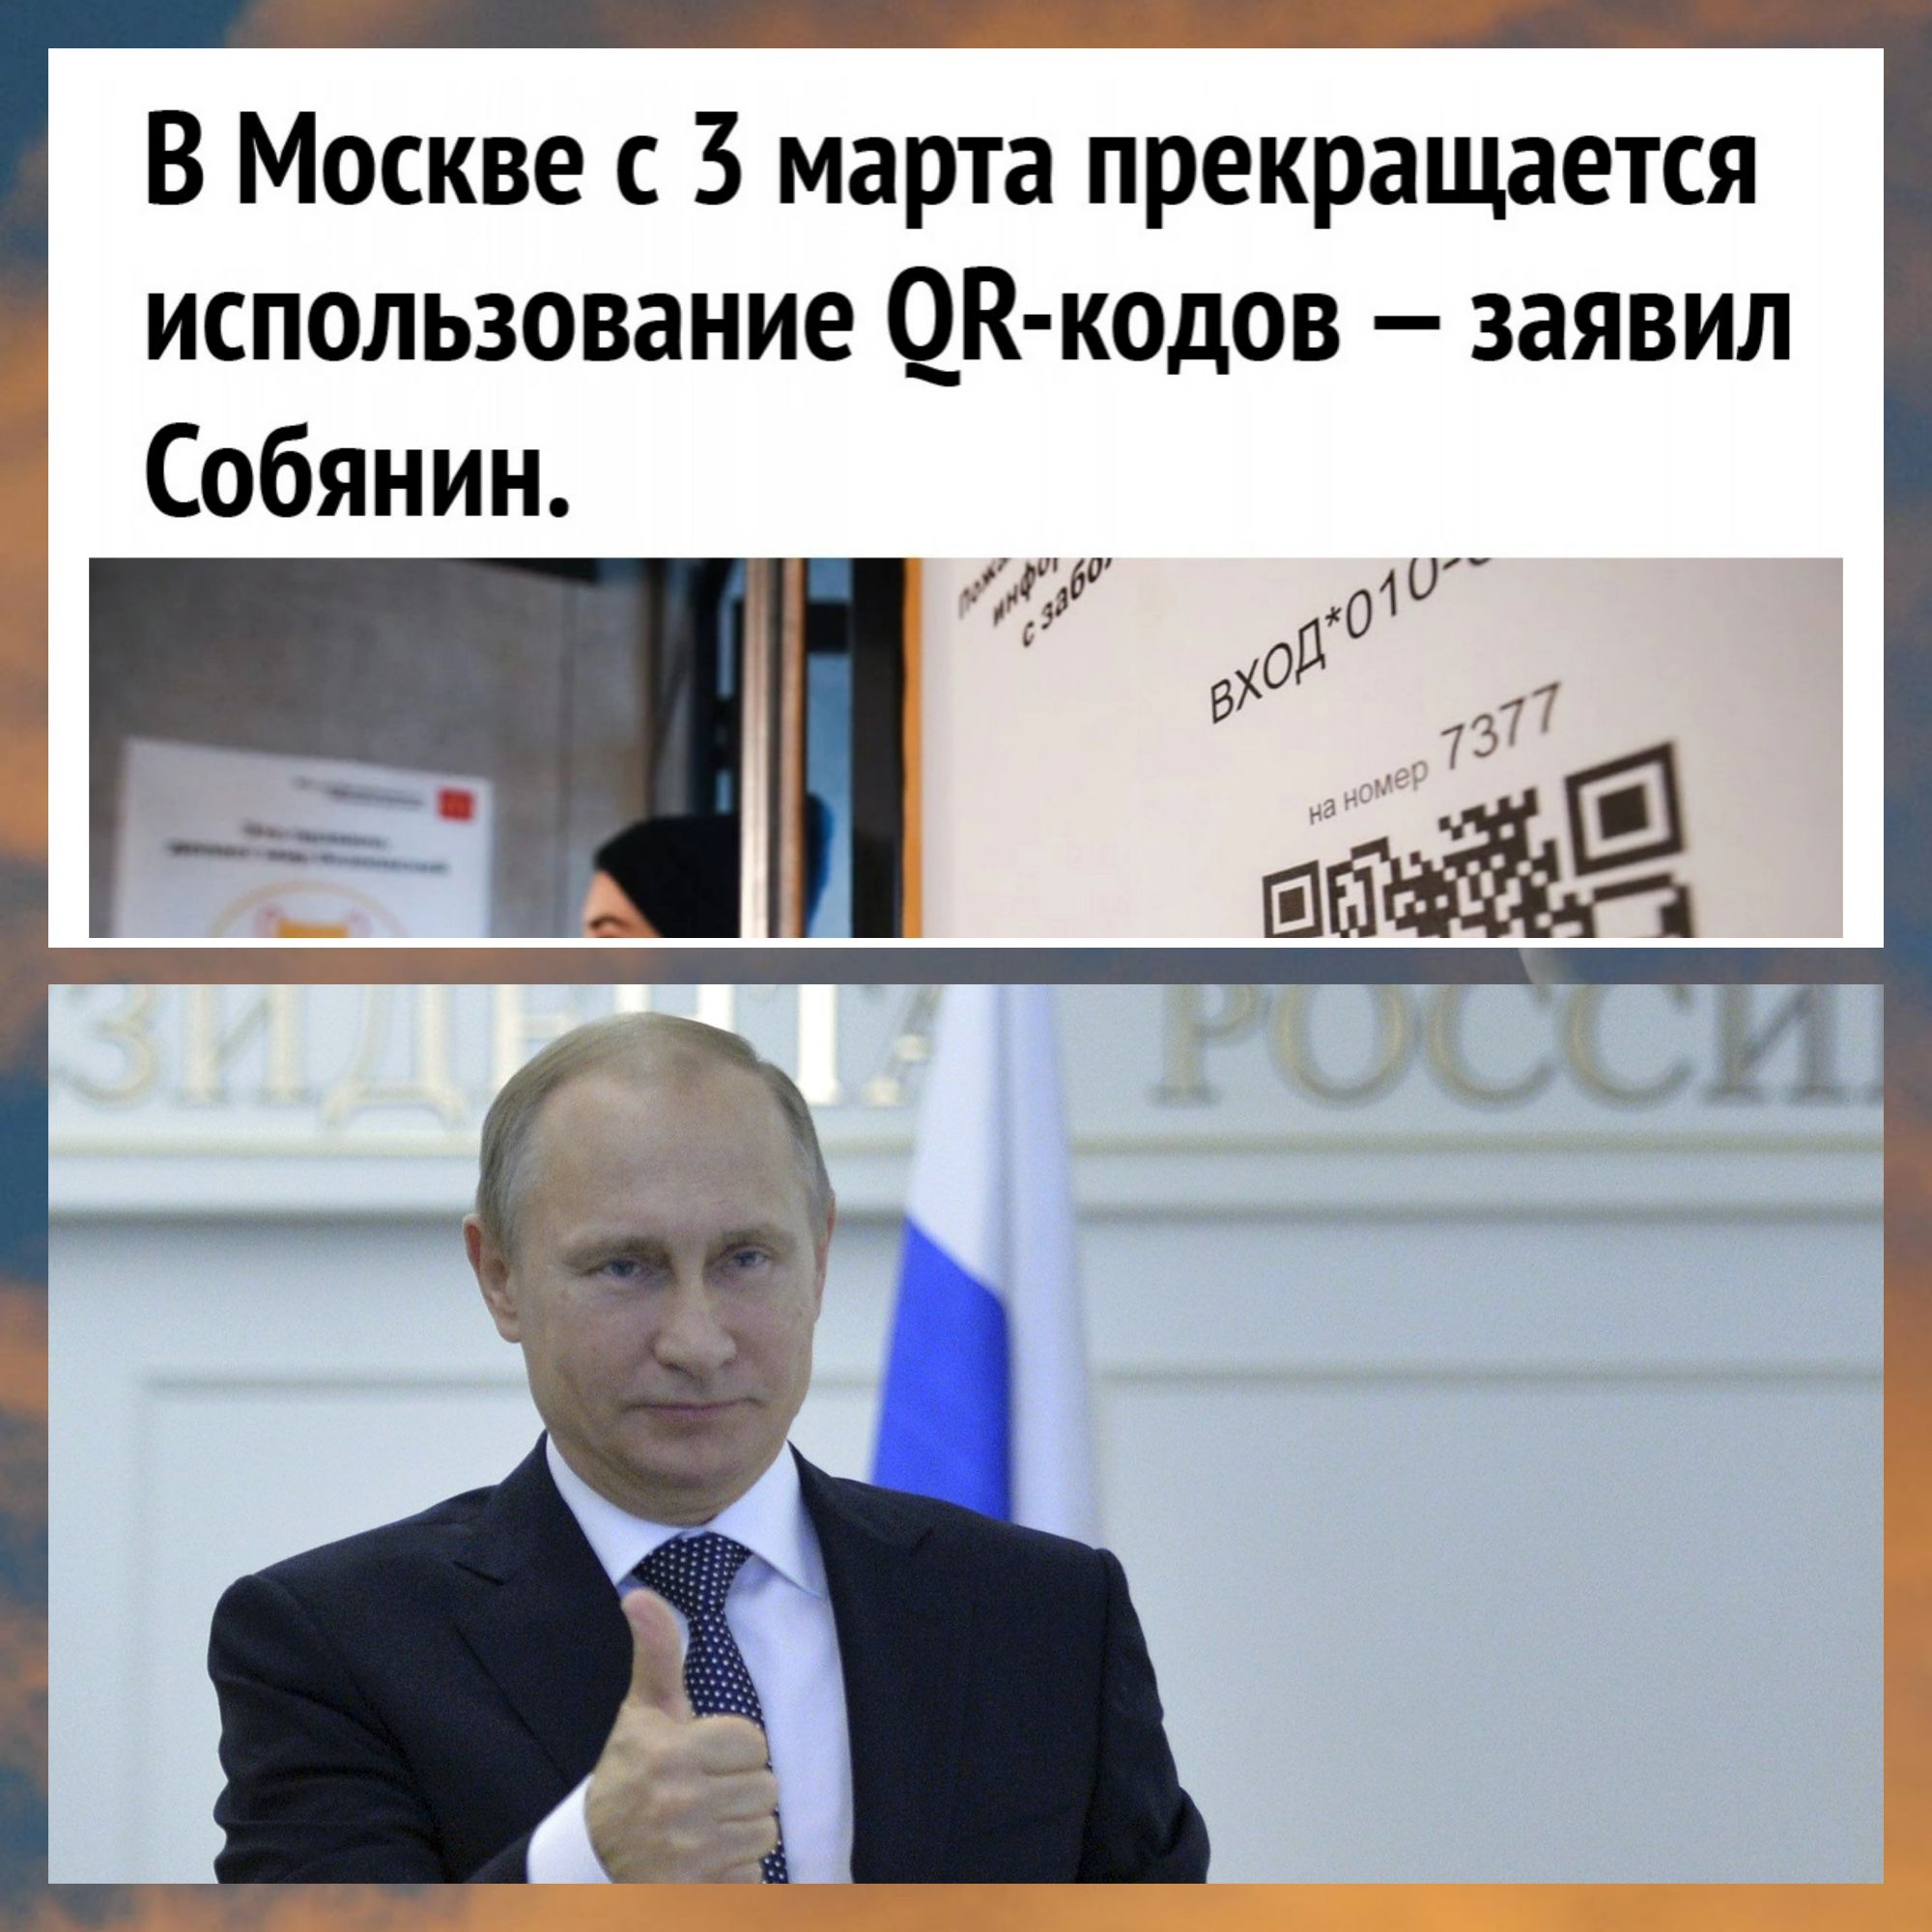 Москве с 3 марта прекращается использование ДК кадов заявил Собянин